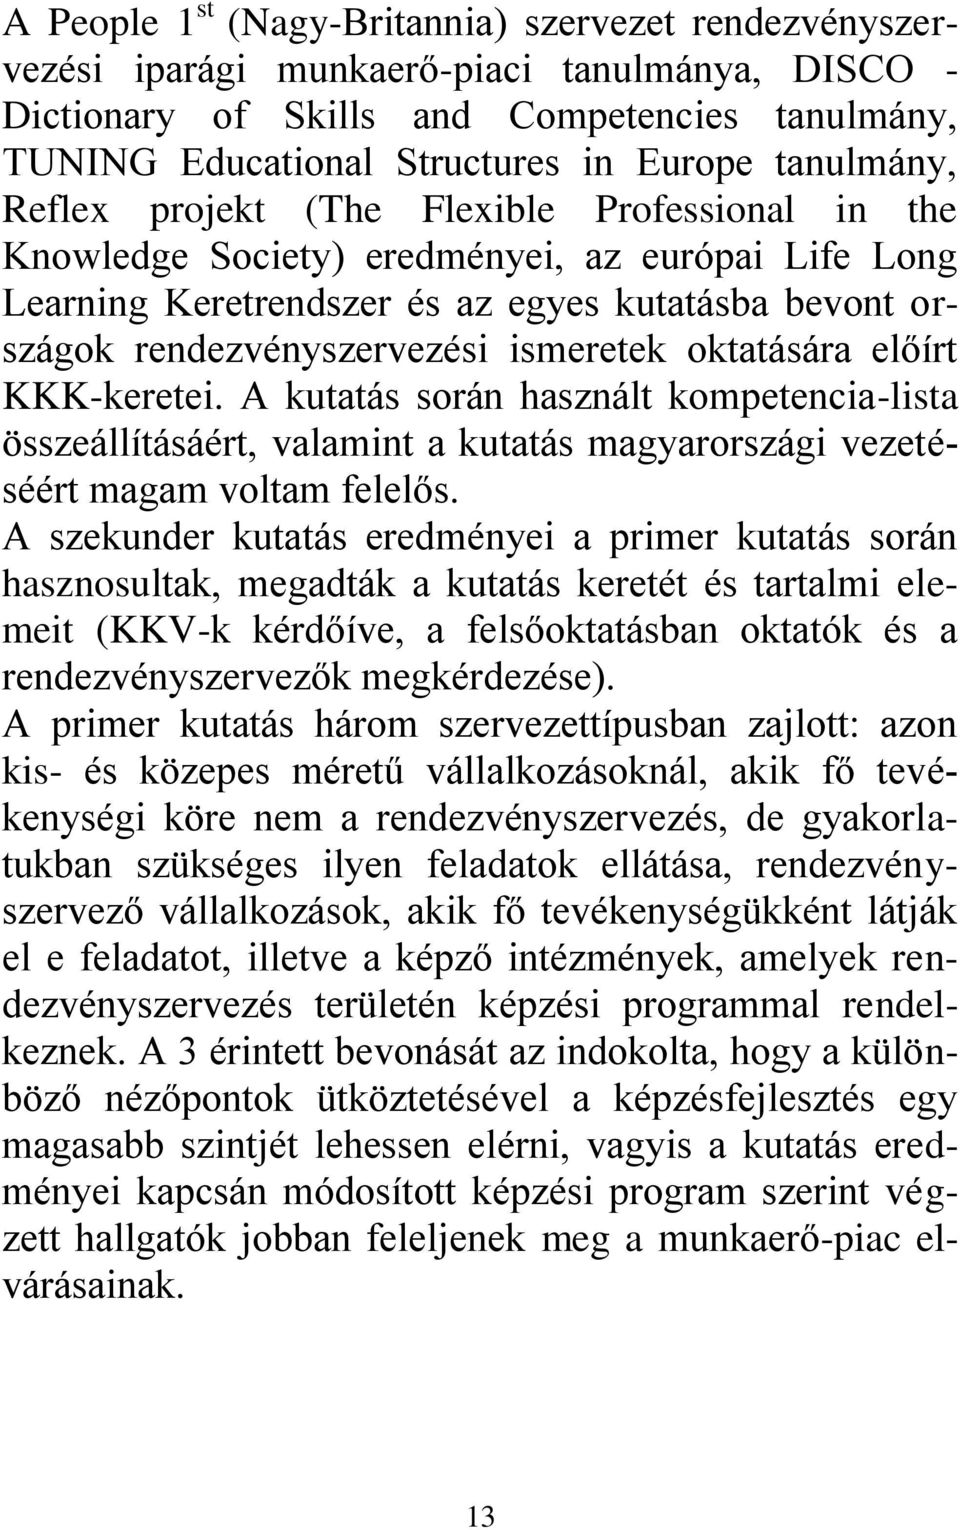 ismeretek oktatására előírt KKK-keretei. A kutatás során használt kompetencia-lista összeállításáért, valamint a kutatás magyarországi vezetéséért magam voltam felelős.